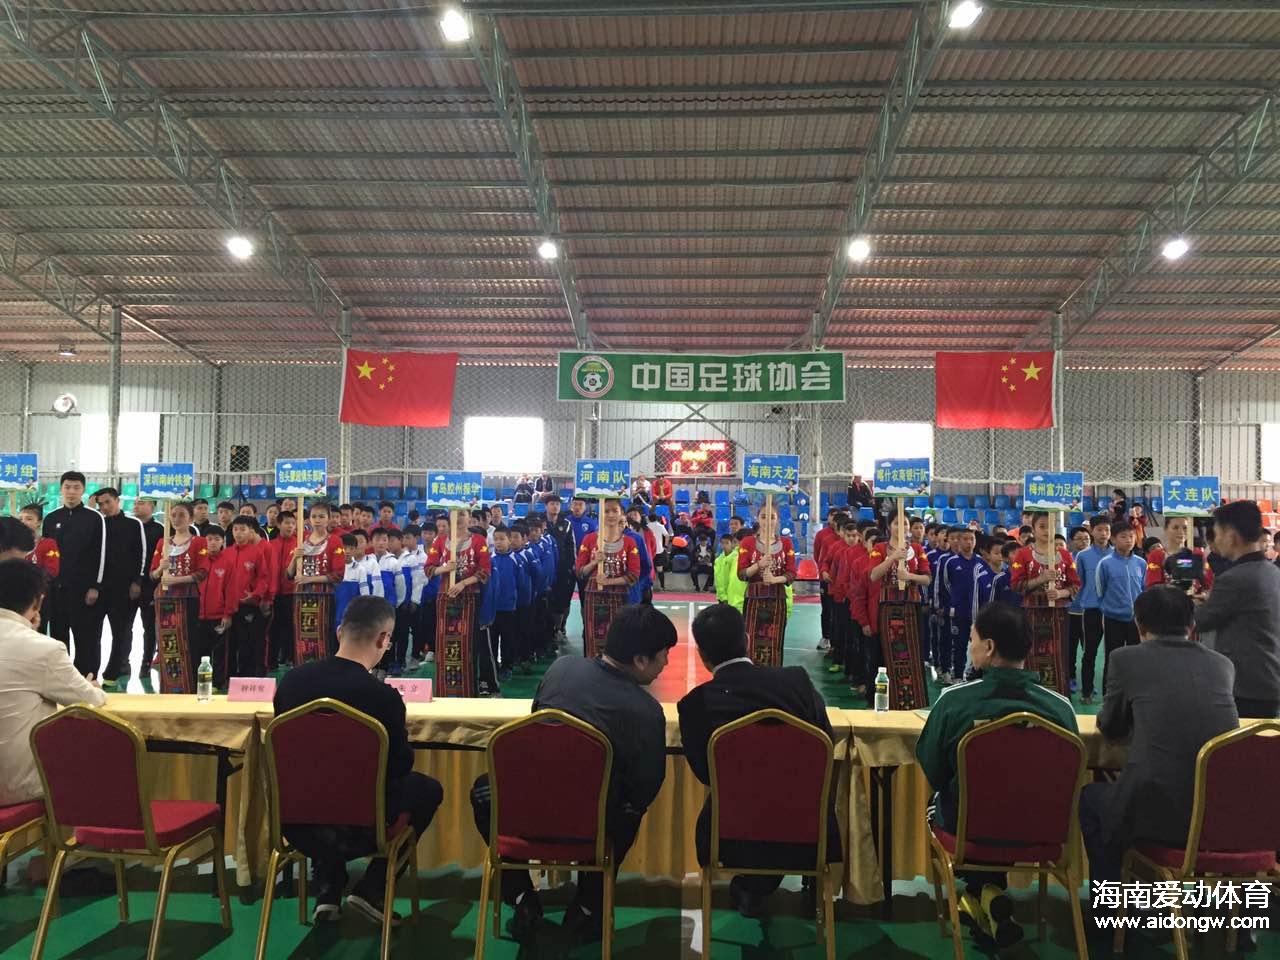 2016年全国U13男子室内五人制足球锦标赛20日开幕  天龙代表海南出战